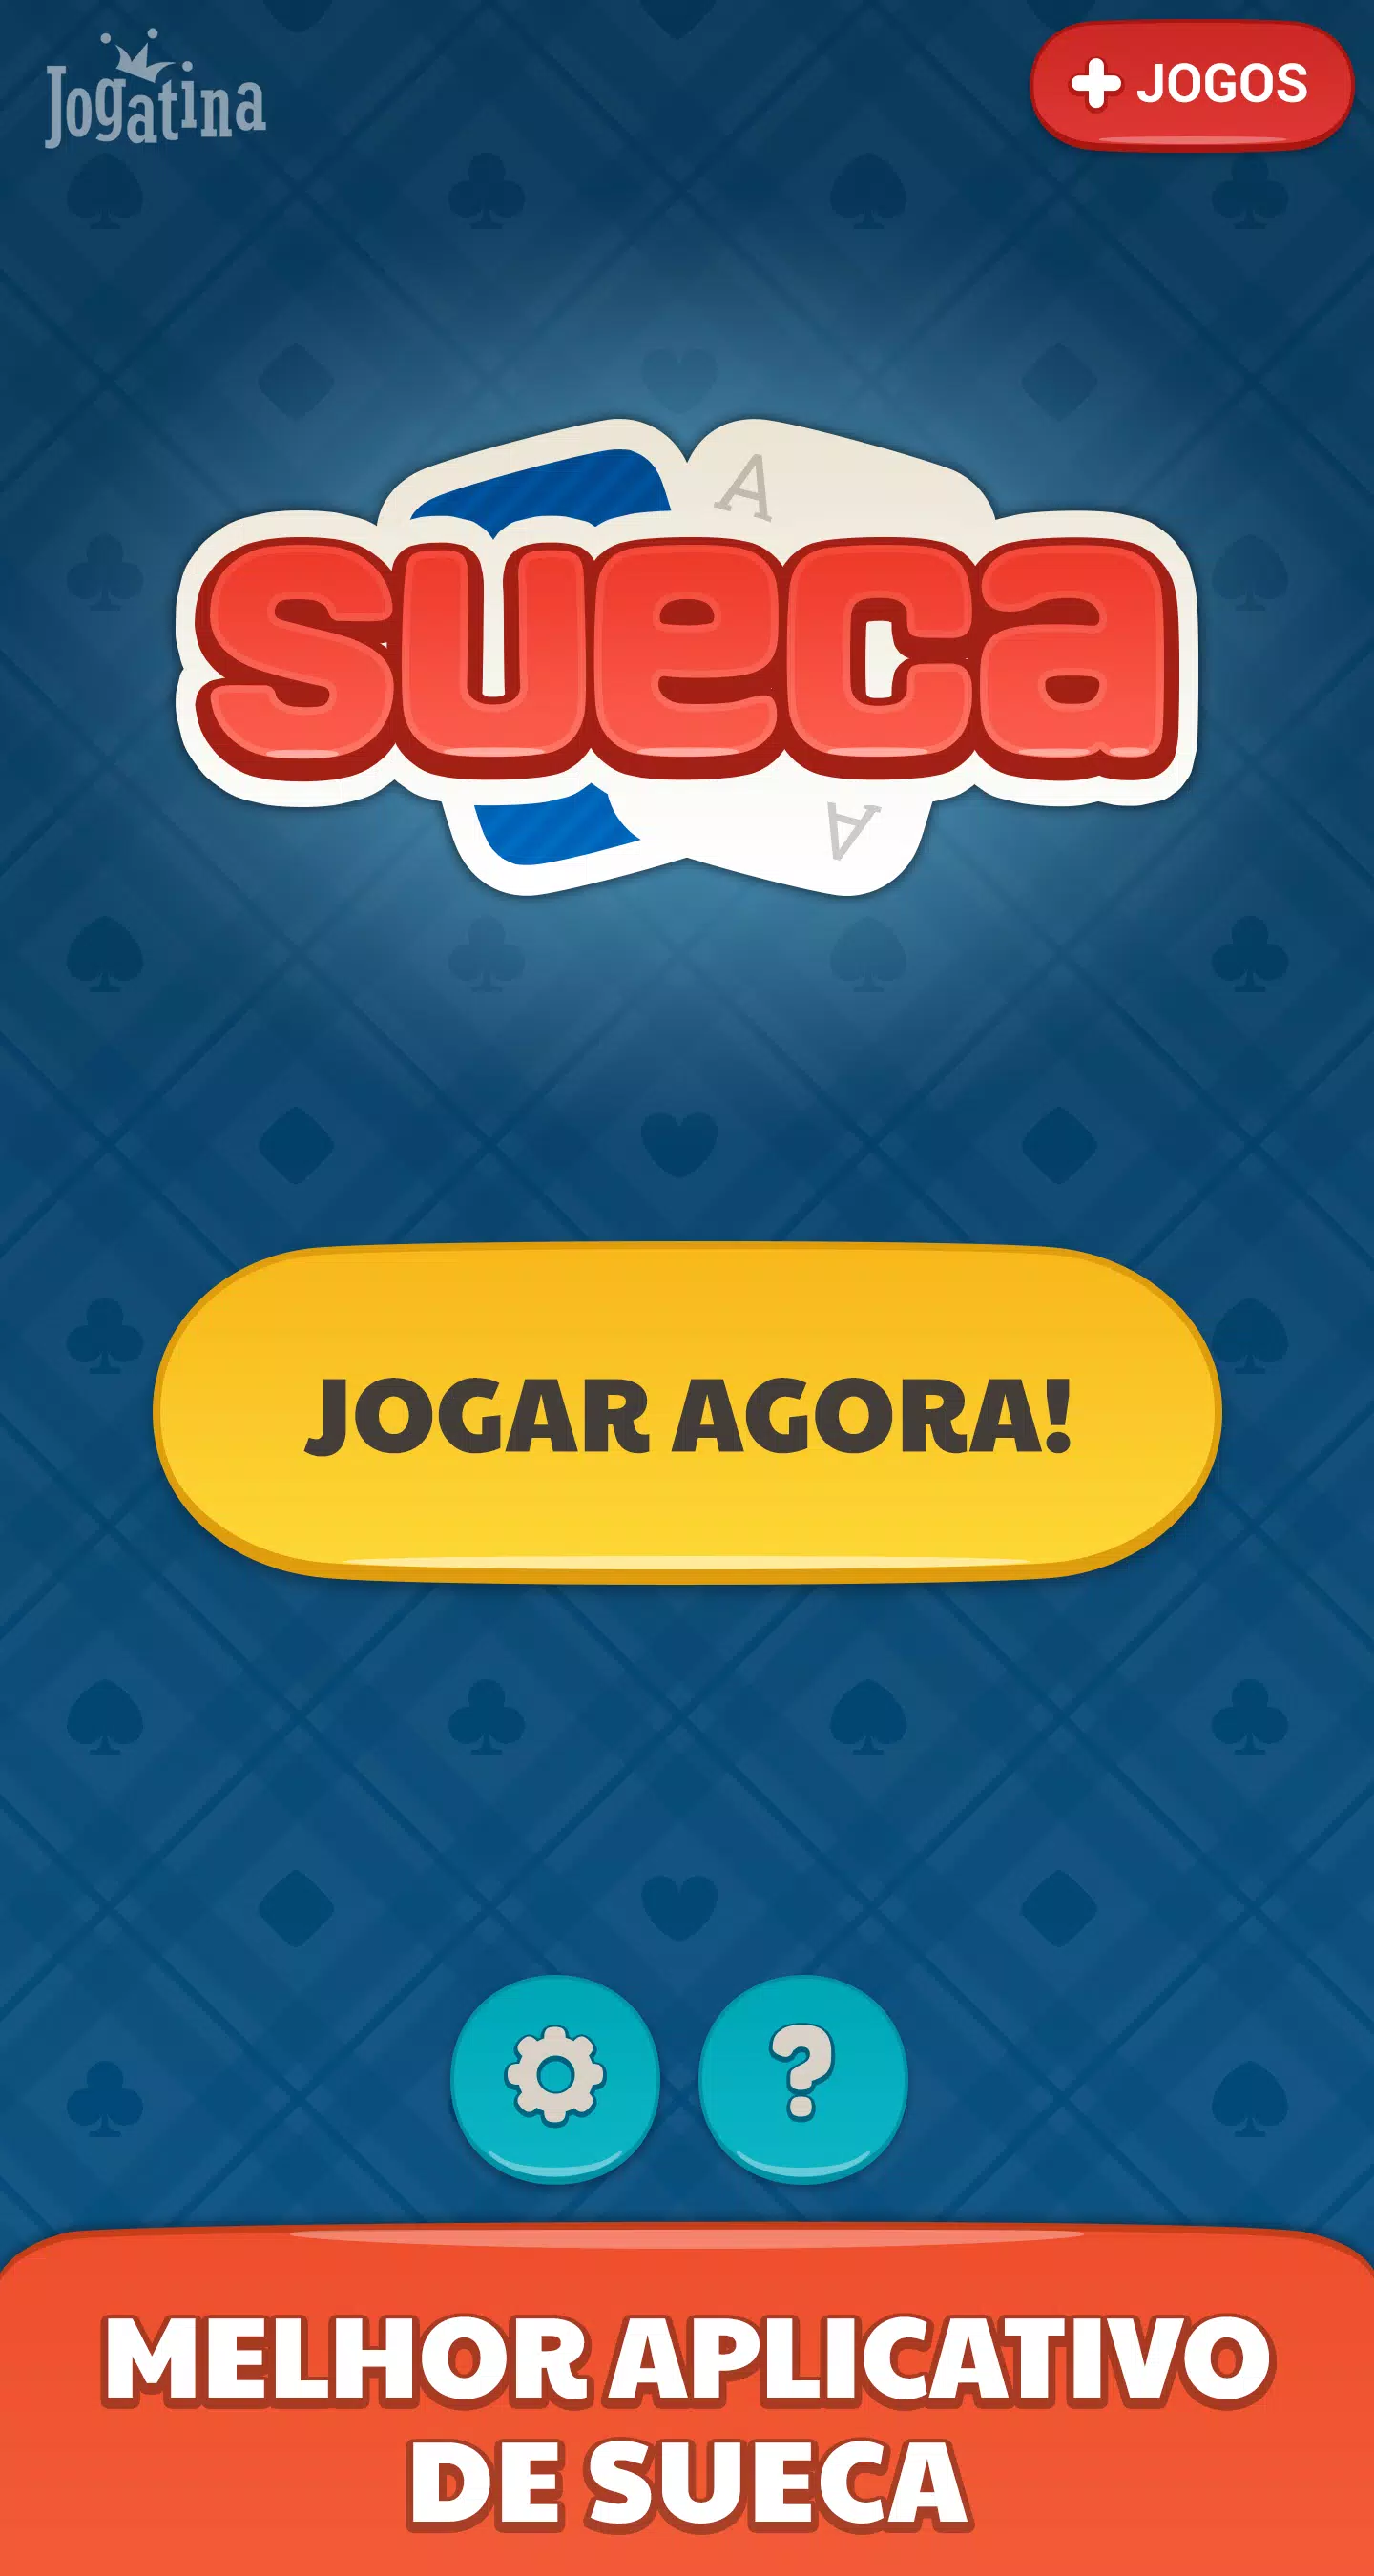 Tranca Jogatina Jogo de Cartas on the App Store